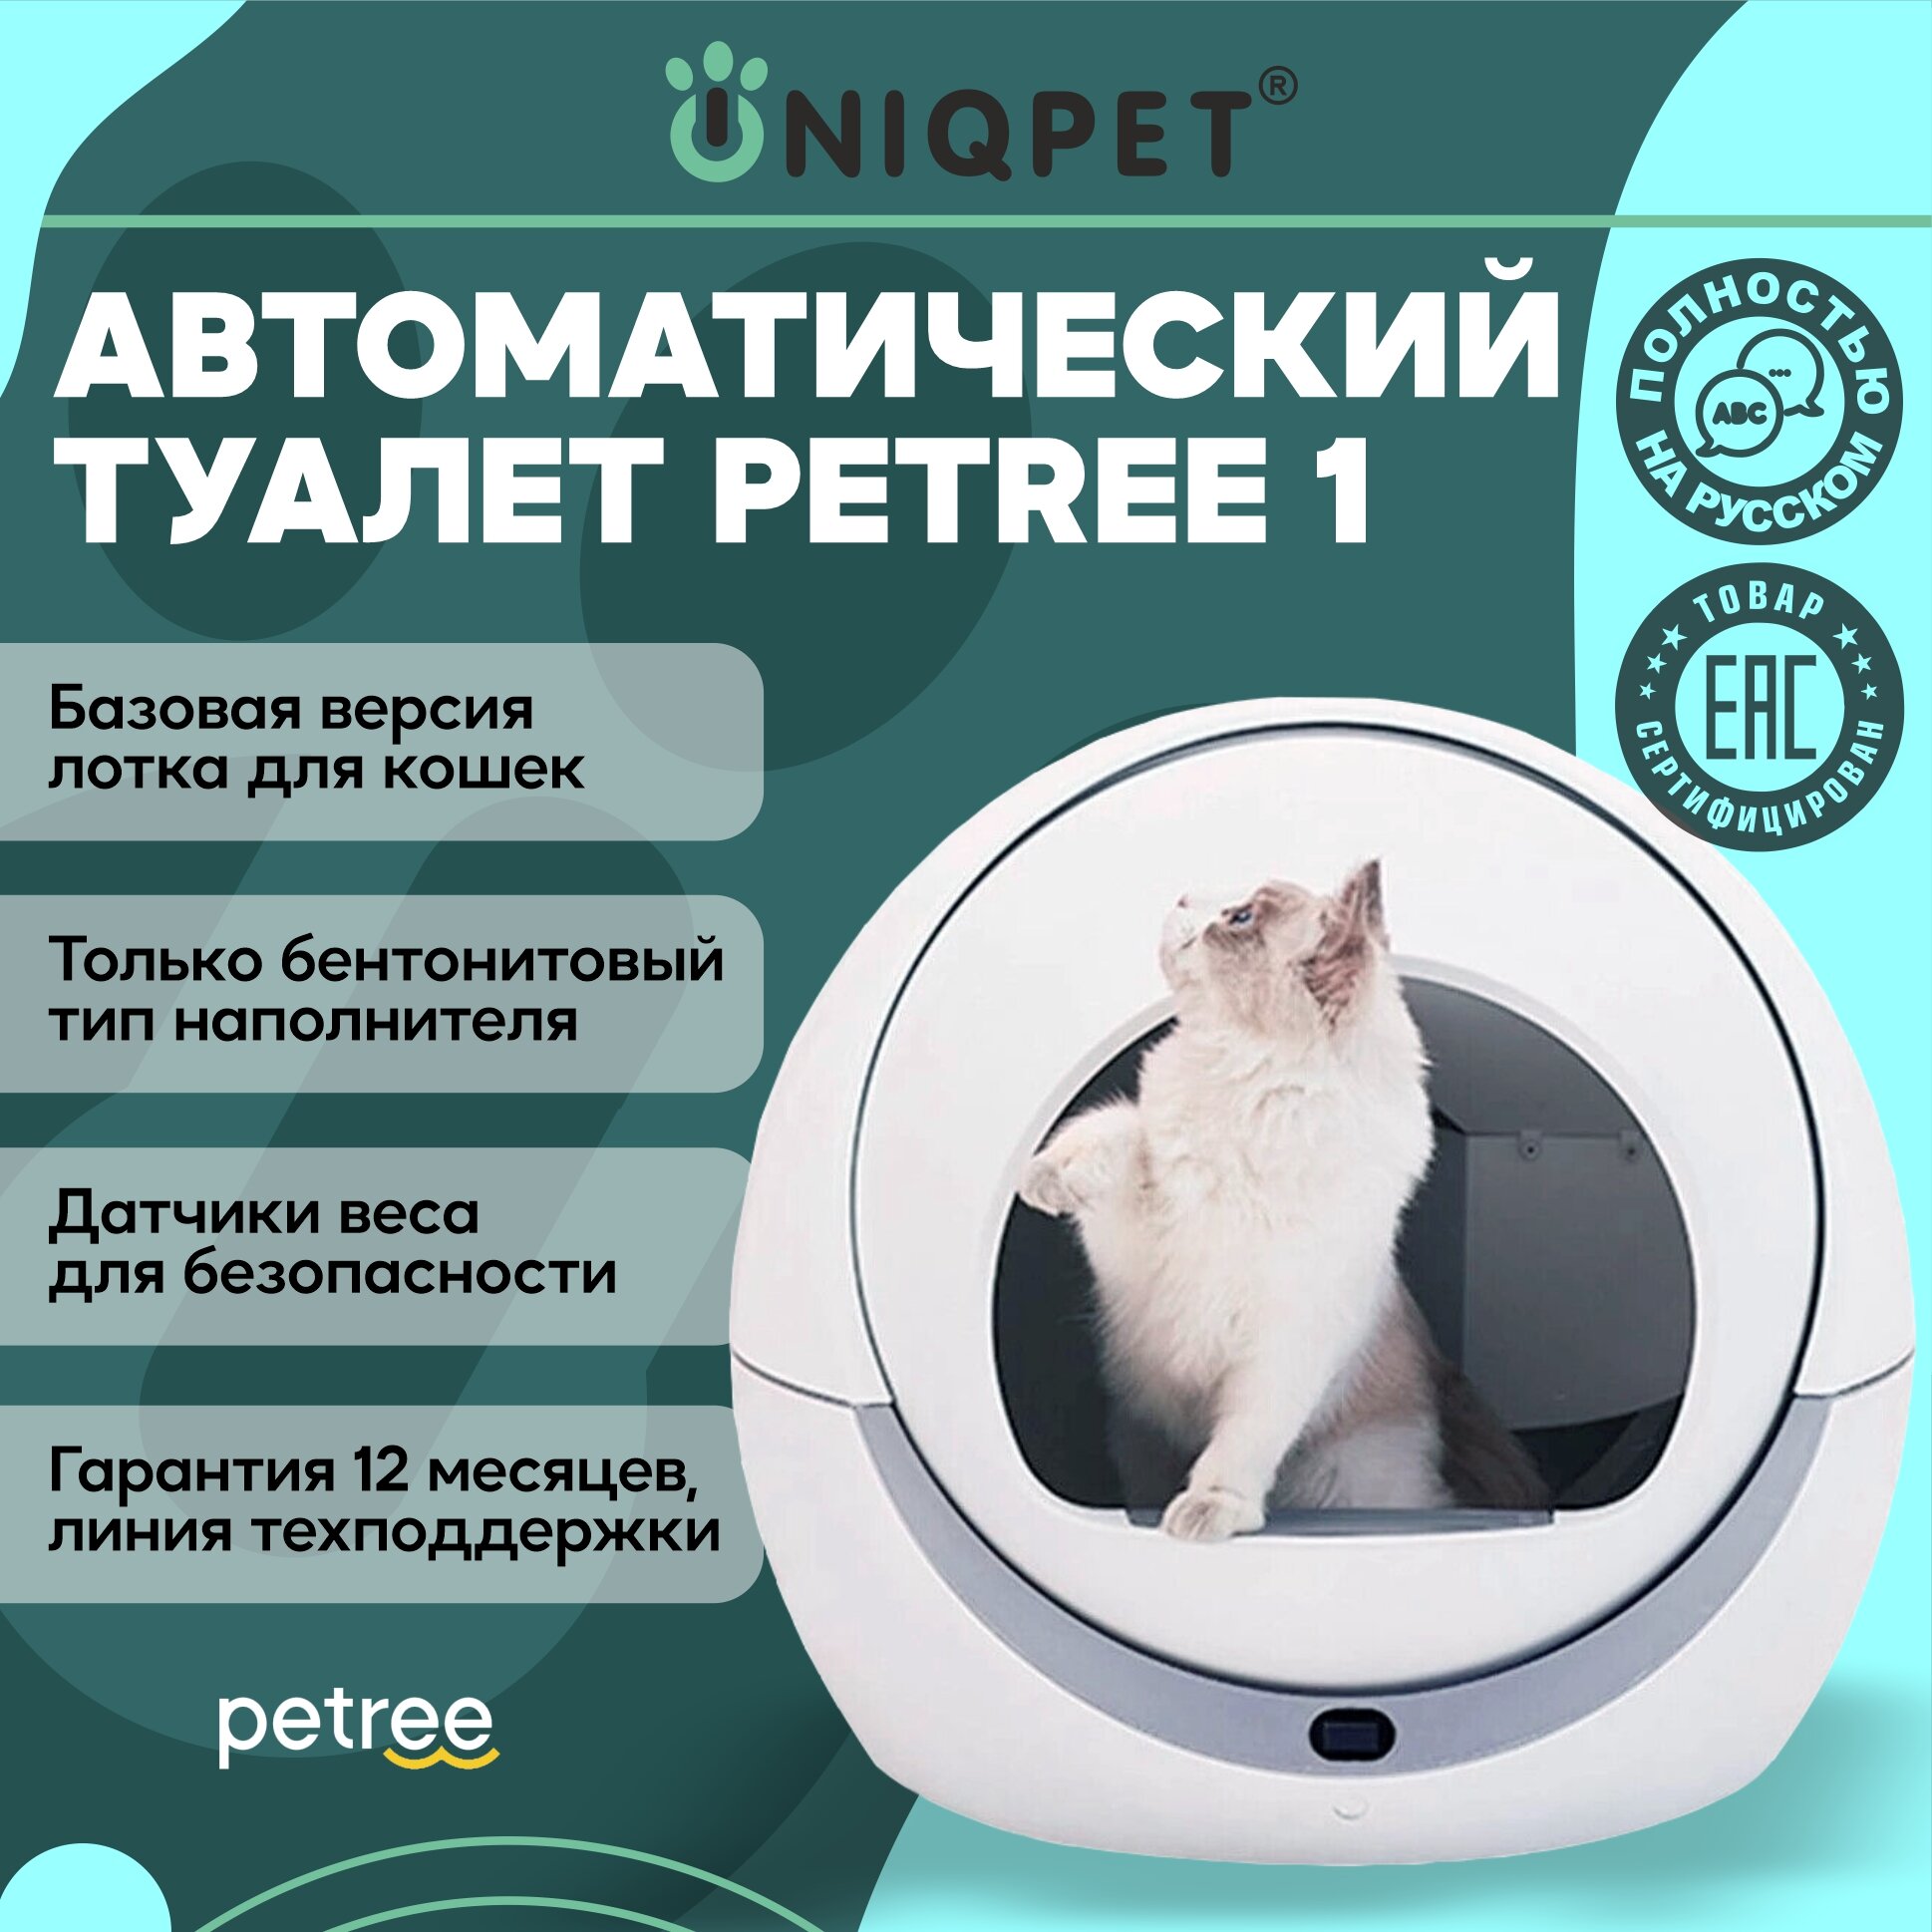 Автоматический туалет для кошек Petree, модель AAC-18-01, базовая версия